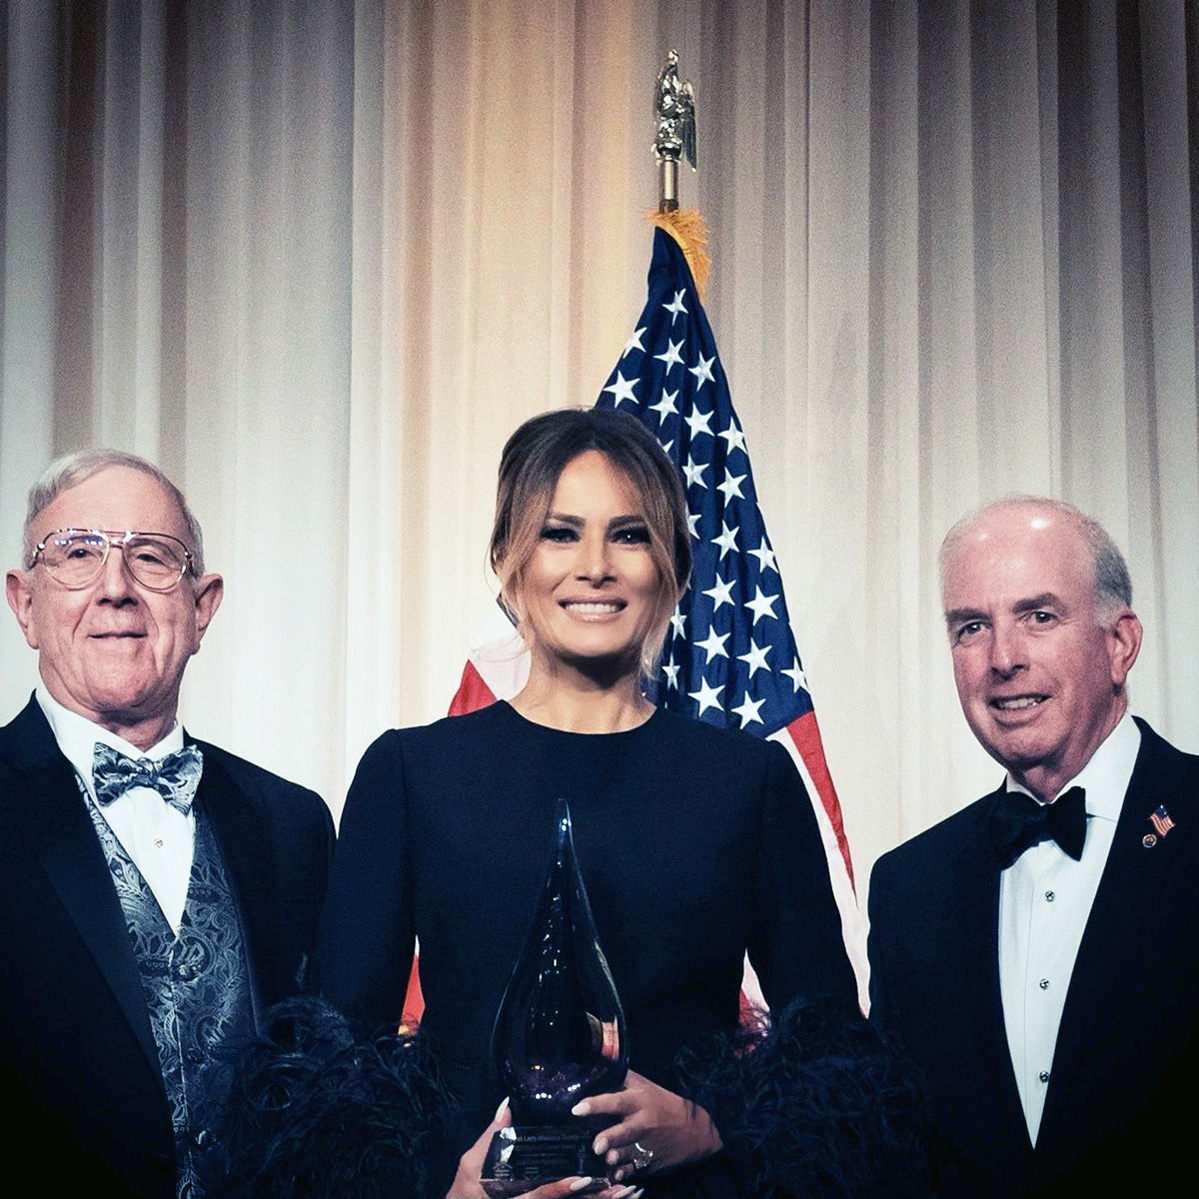 Бывшая первая леди США Мелания Трамп была награждена премией «Дух Линкольна» республиканцами из бревенчатых хижин (LCR) на ежегодном гала-вечере «Дух Линкольна» в клубе Трампа Мар-а-Лаго